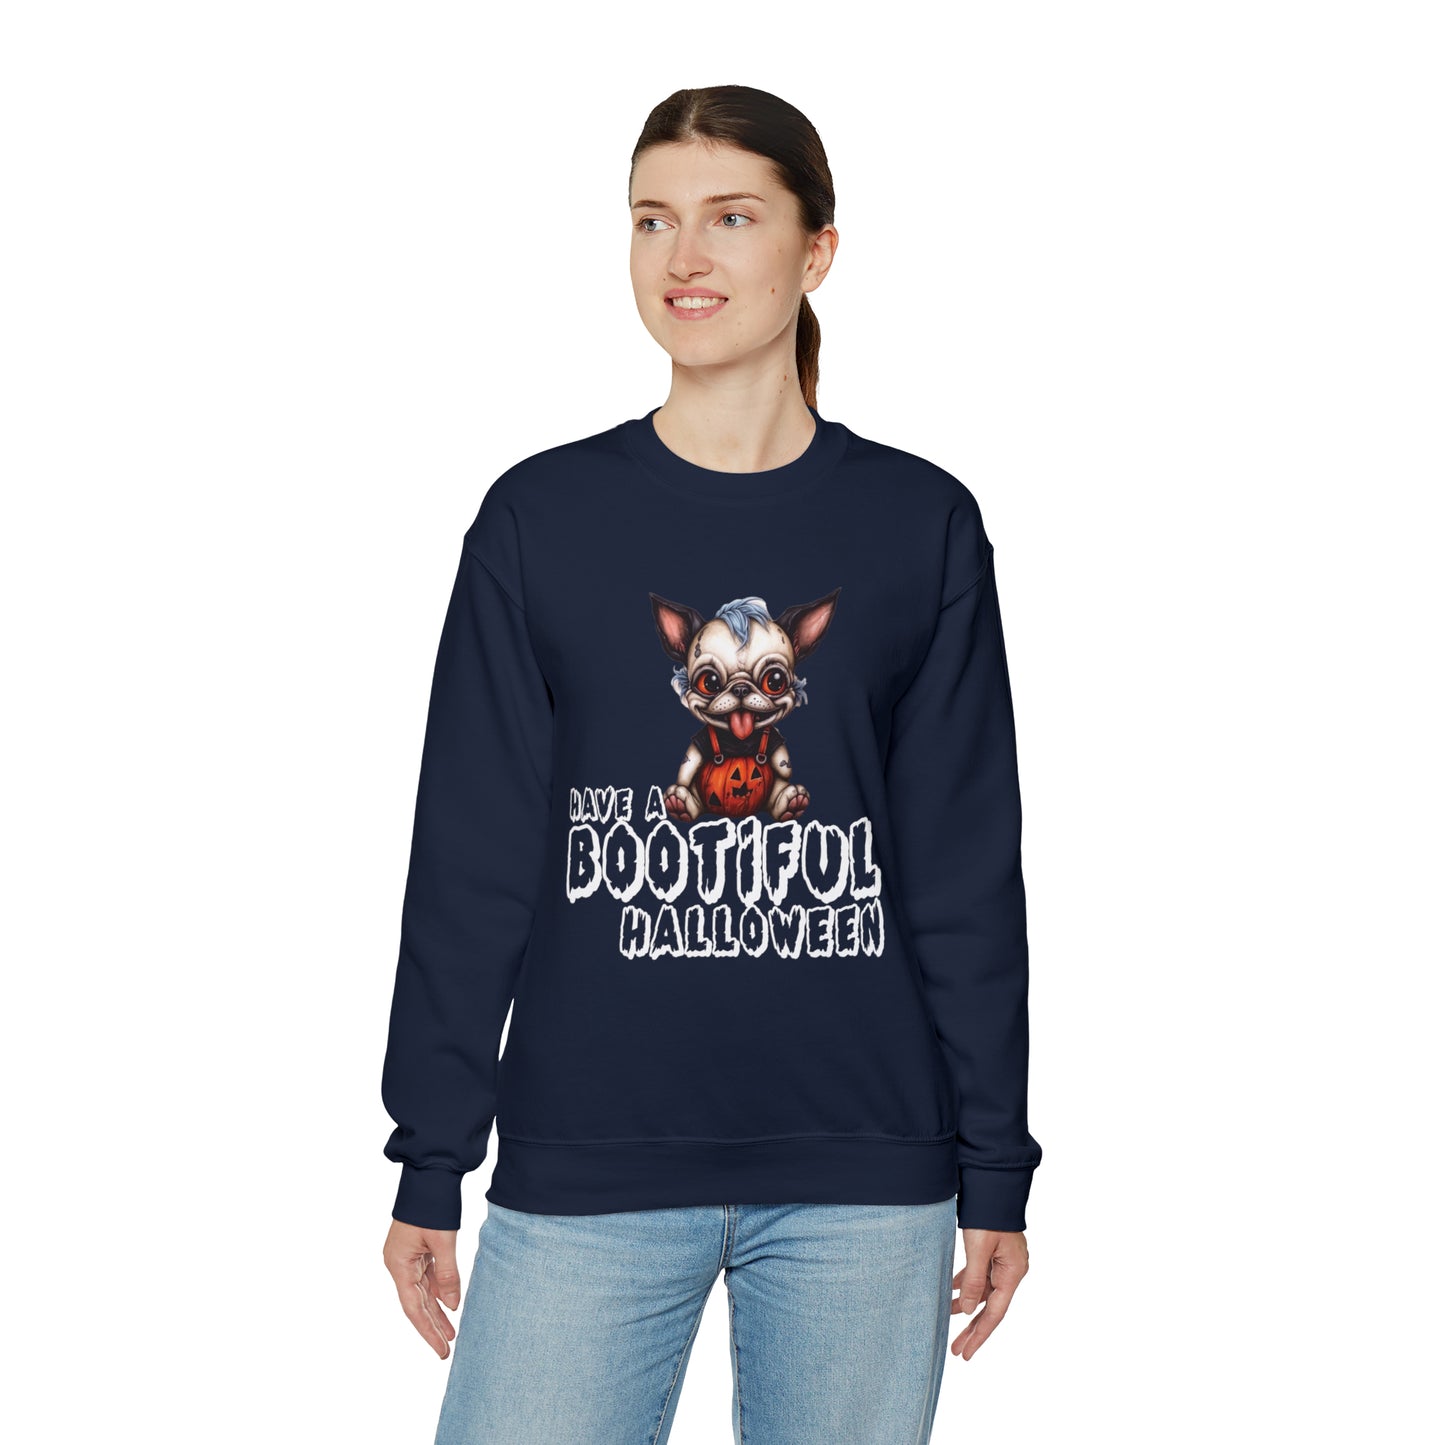 Bootiful  Halloween Unisex Sweatshirt